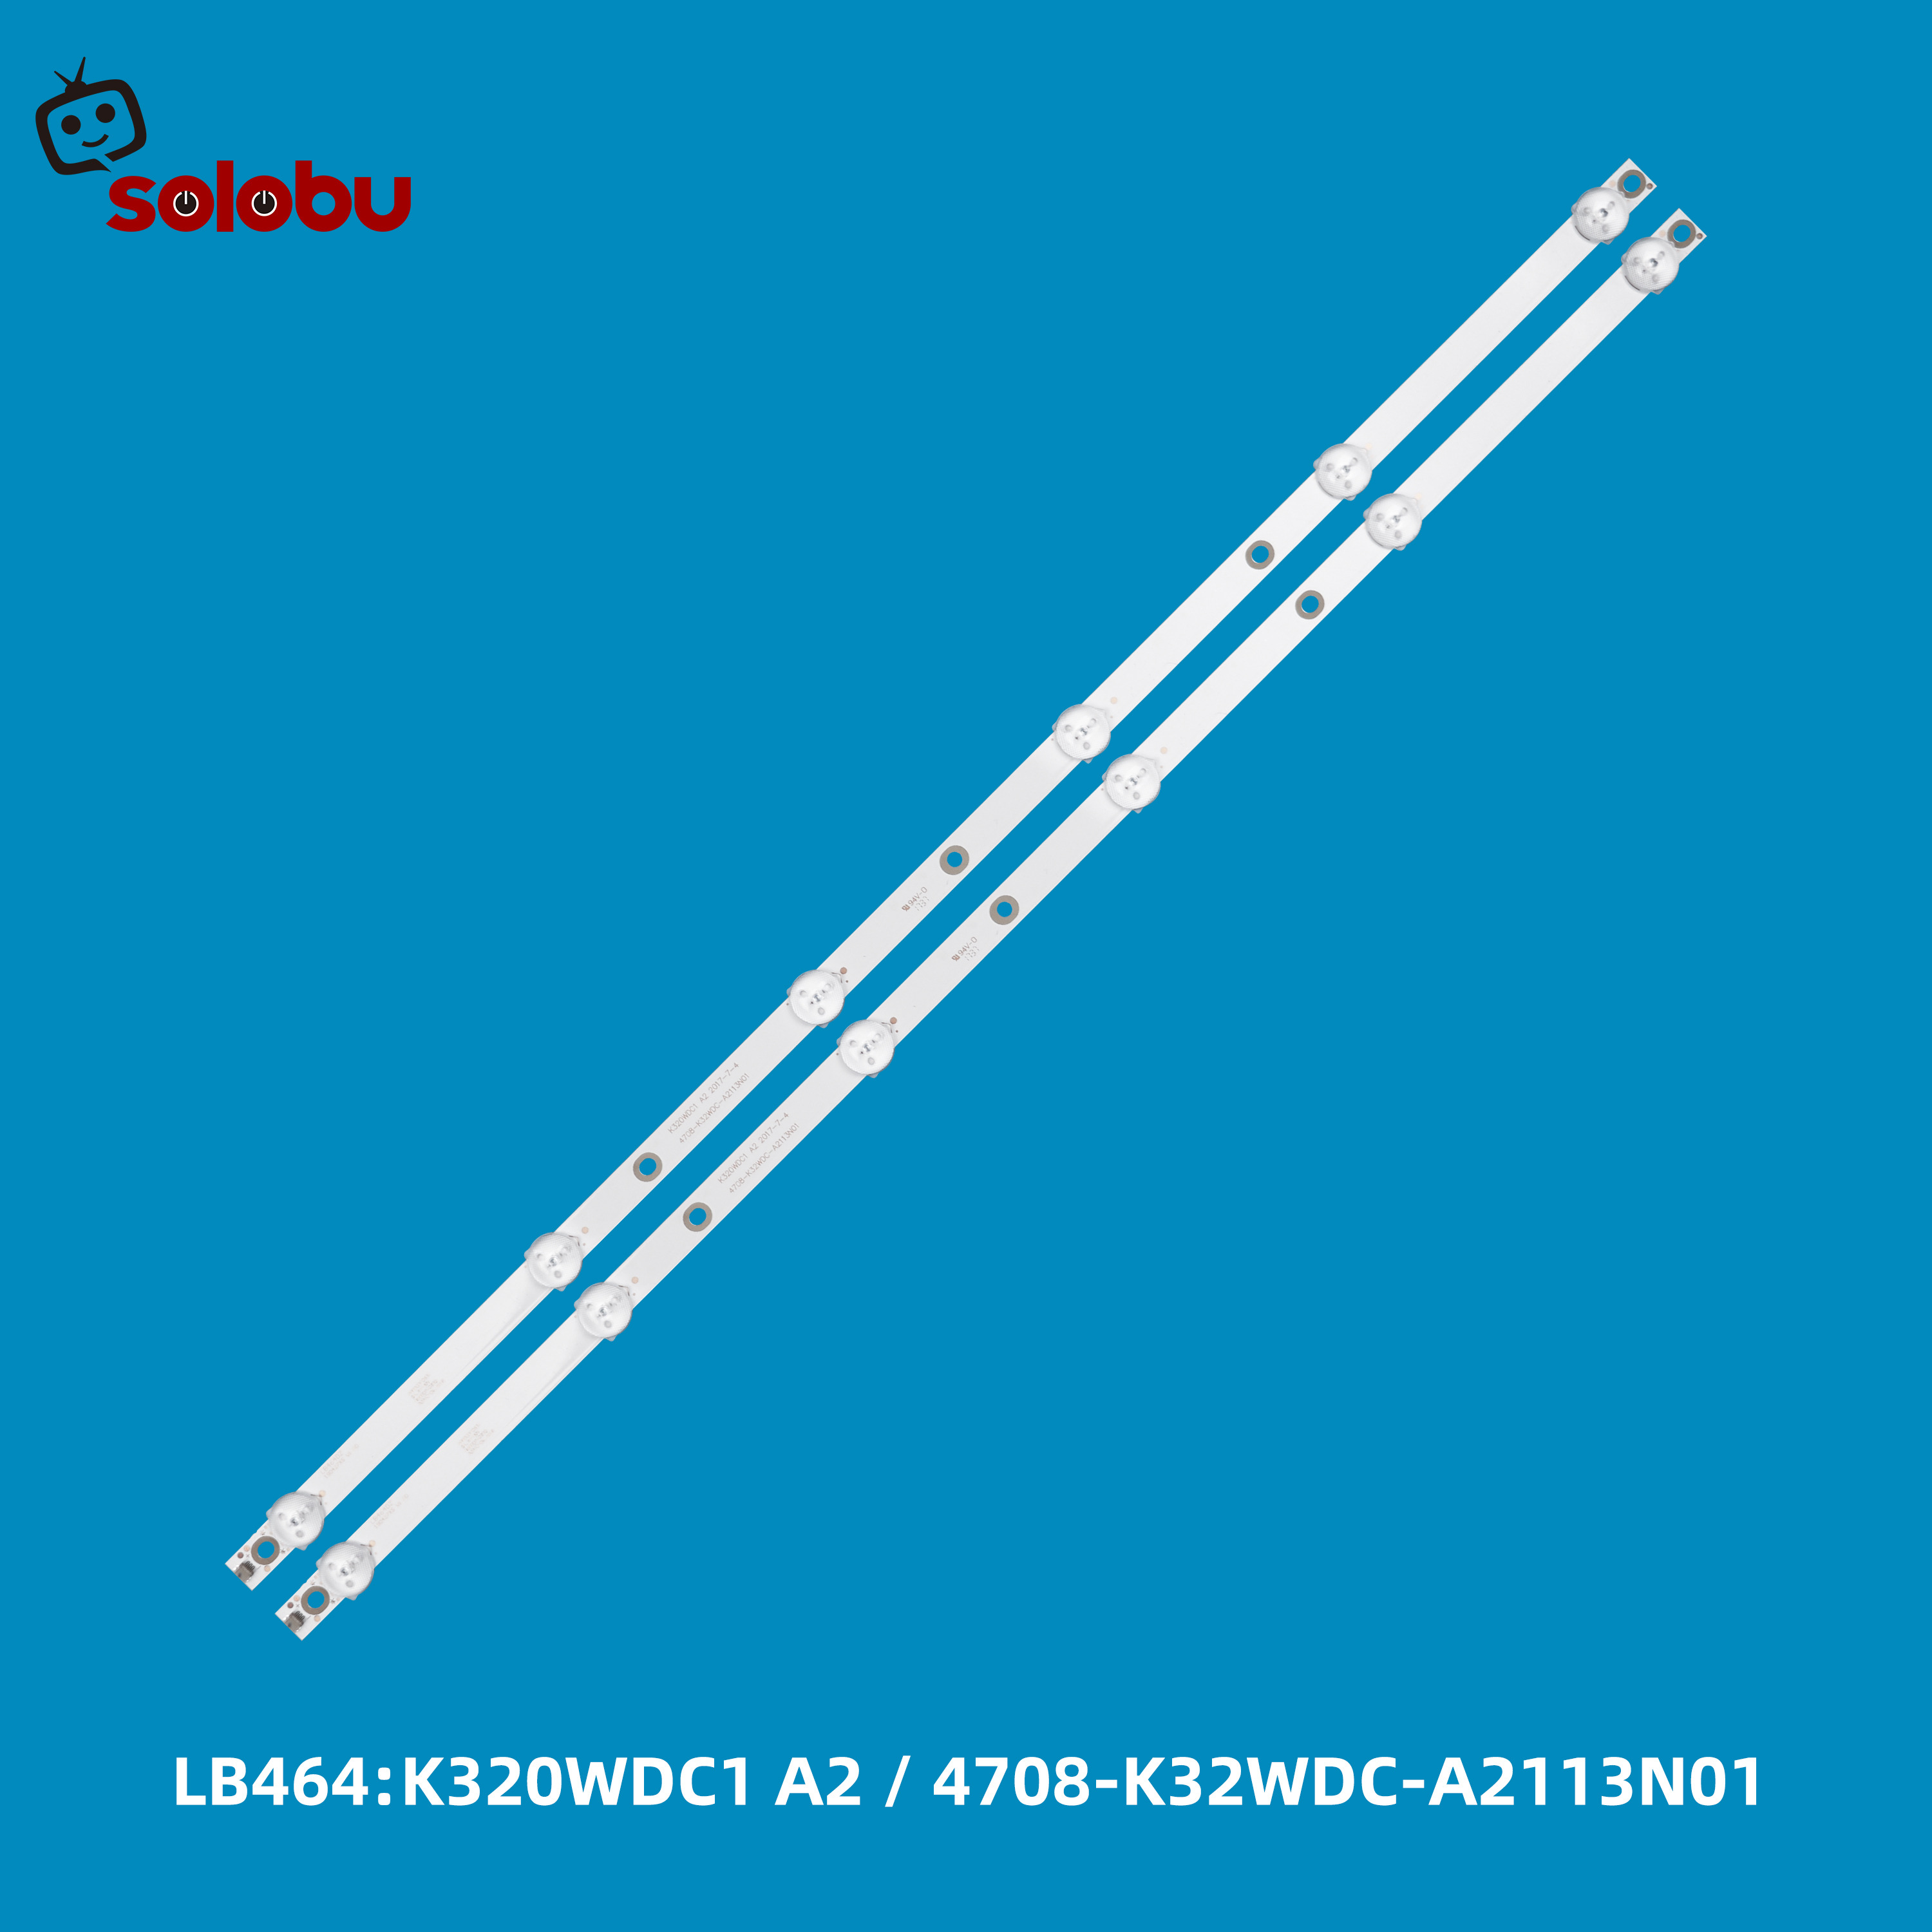 K320WDC1 A2, 4708-K32WDC